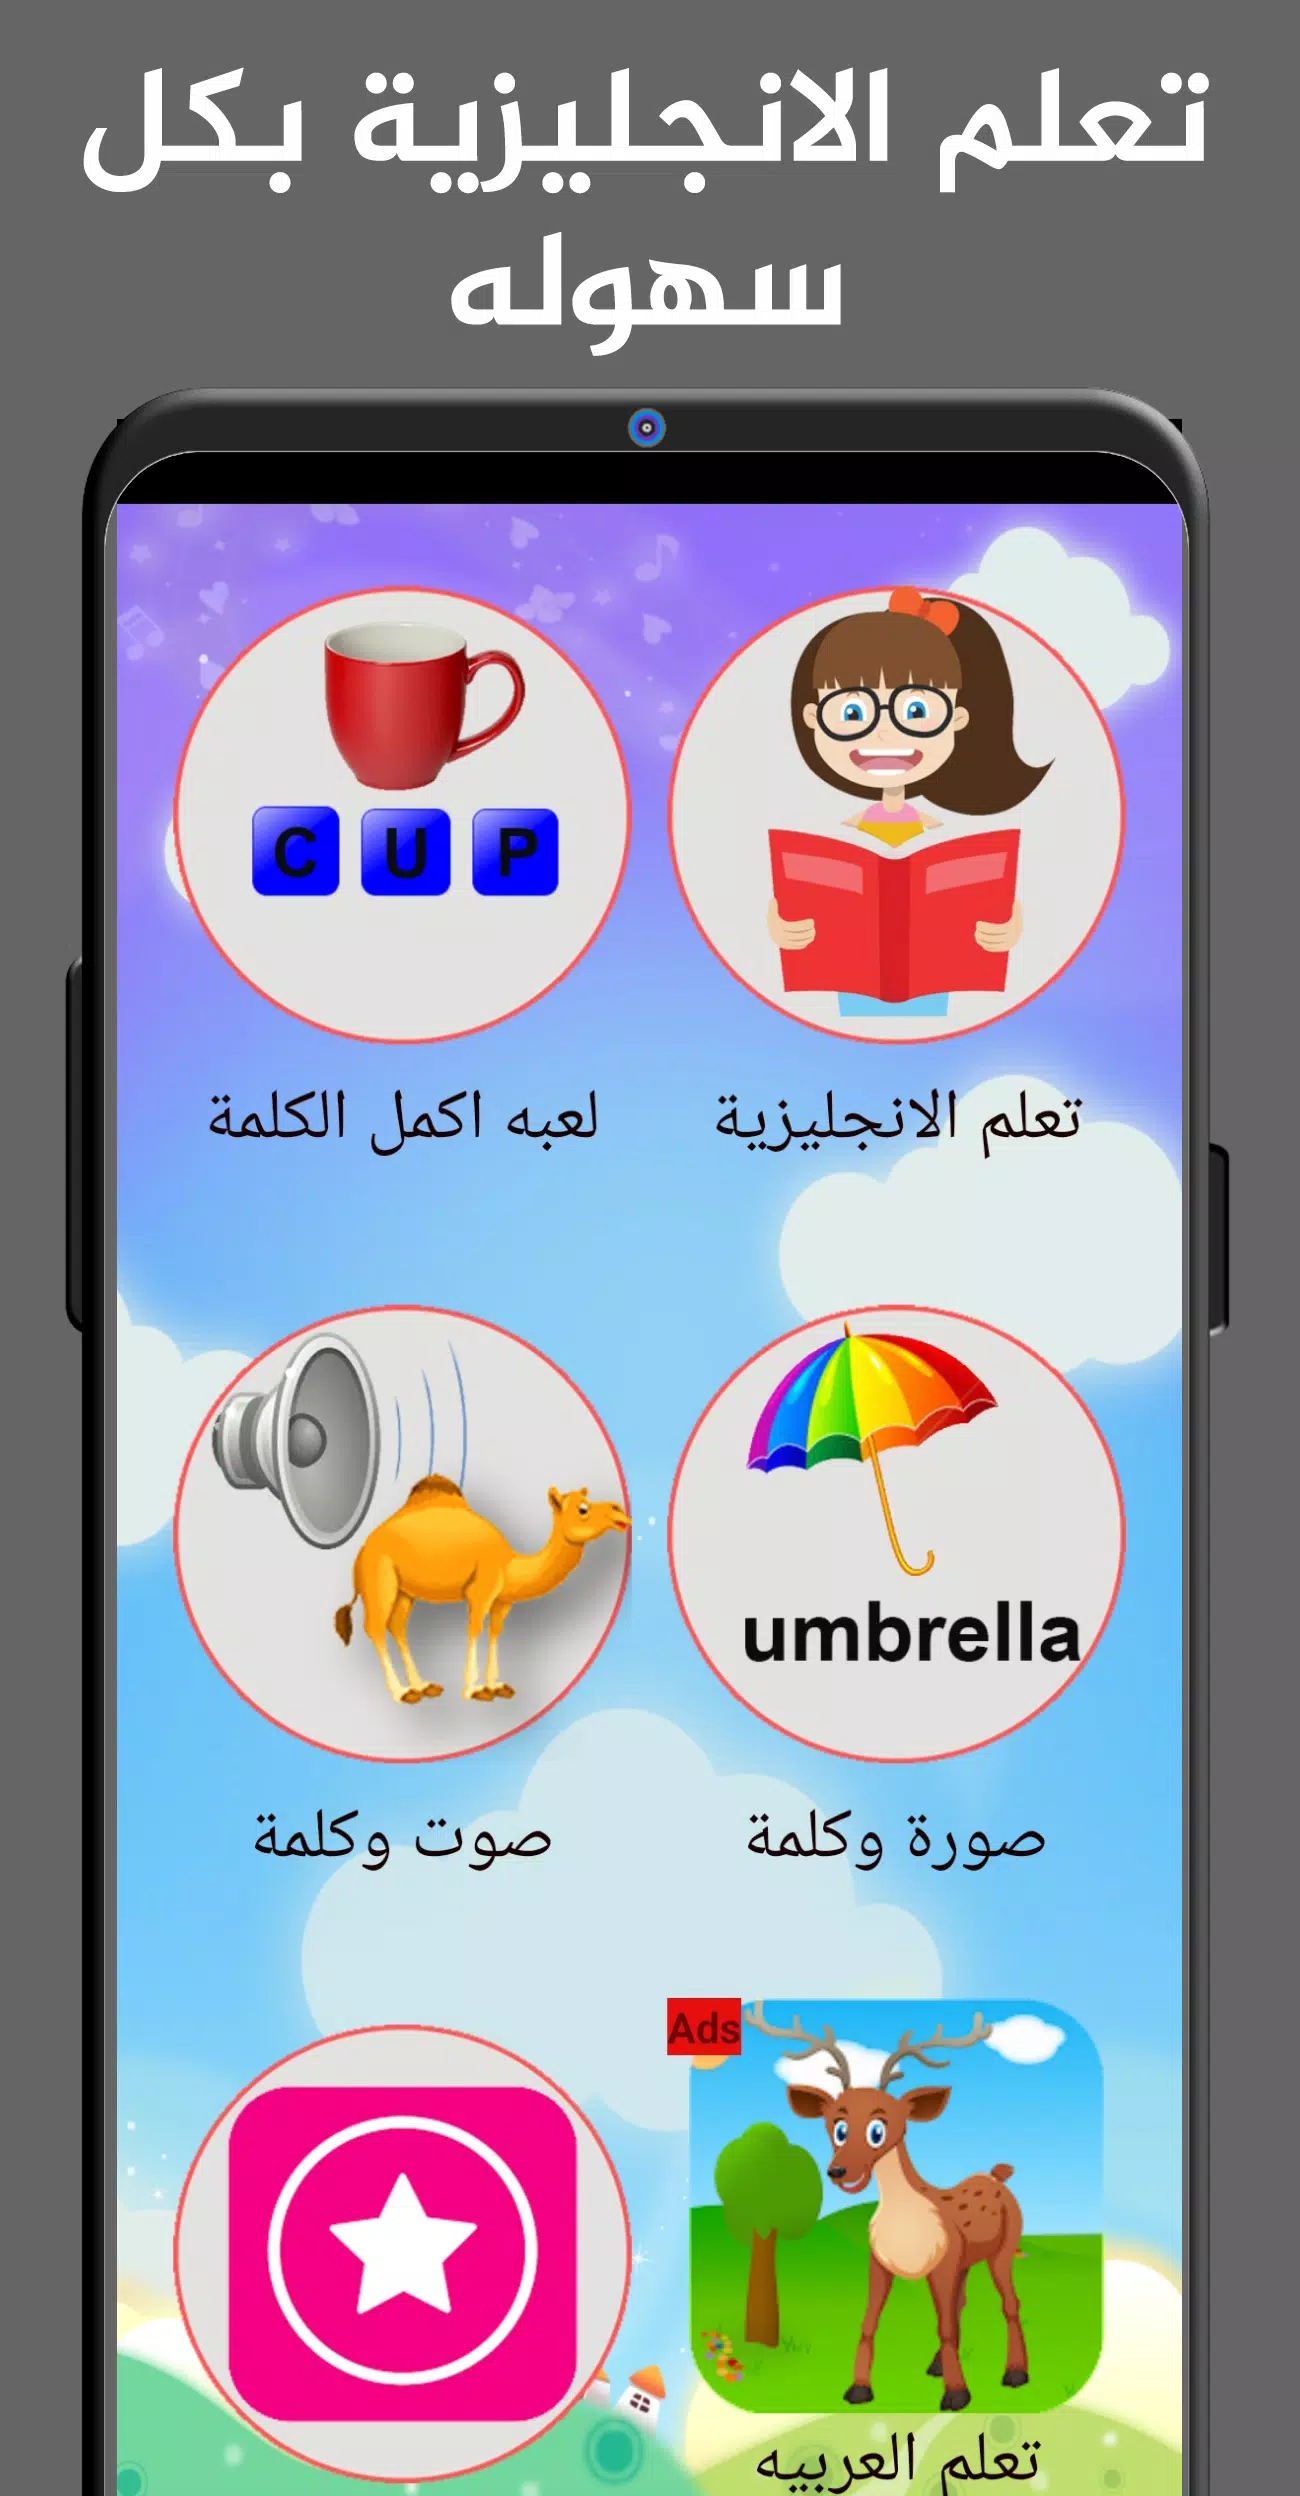 تعليم اللغة الانجليزية للاطفال APK for Android Download